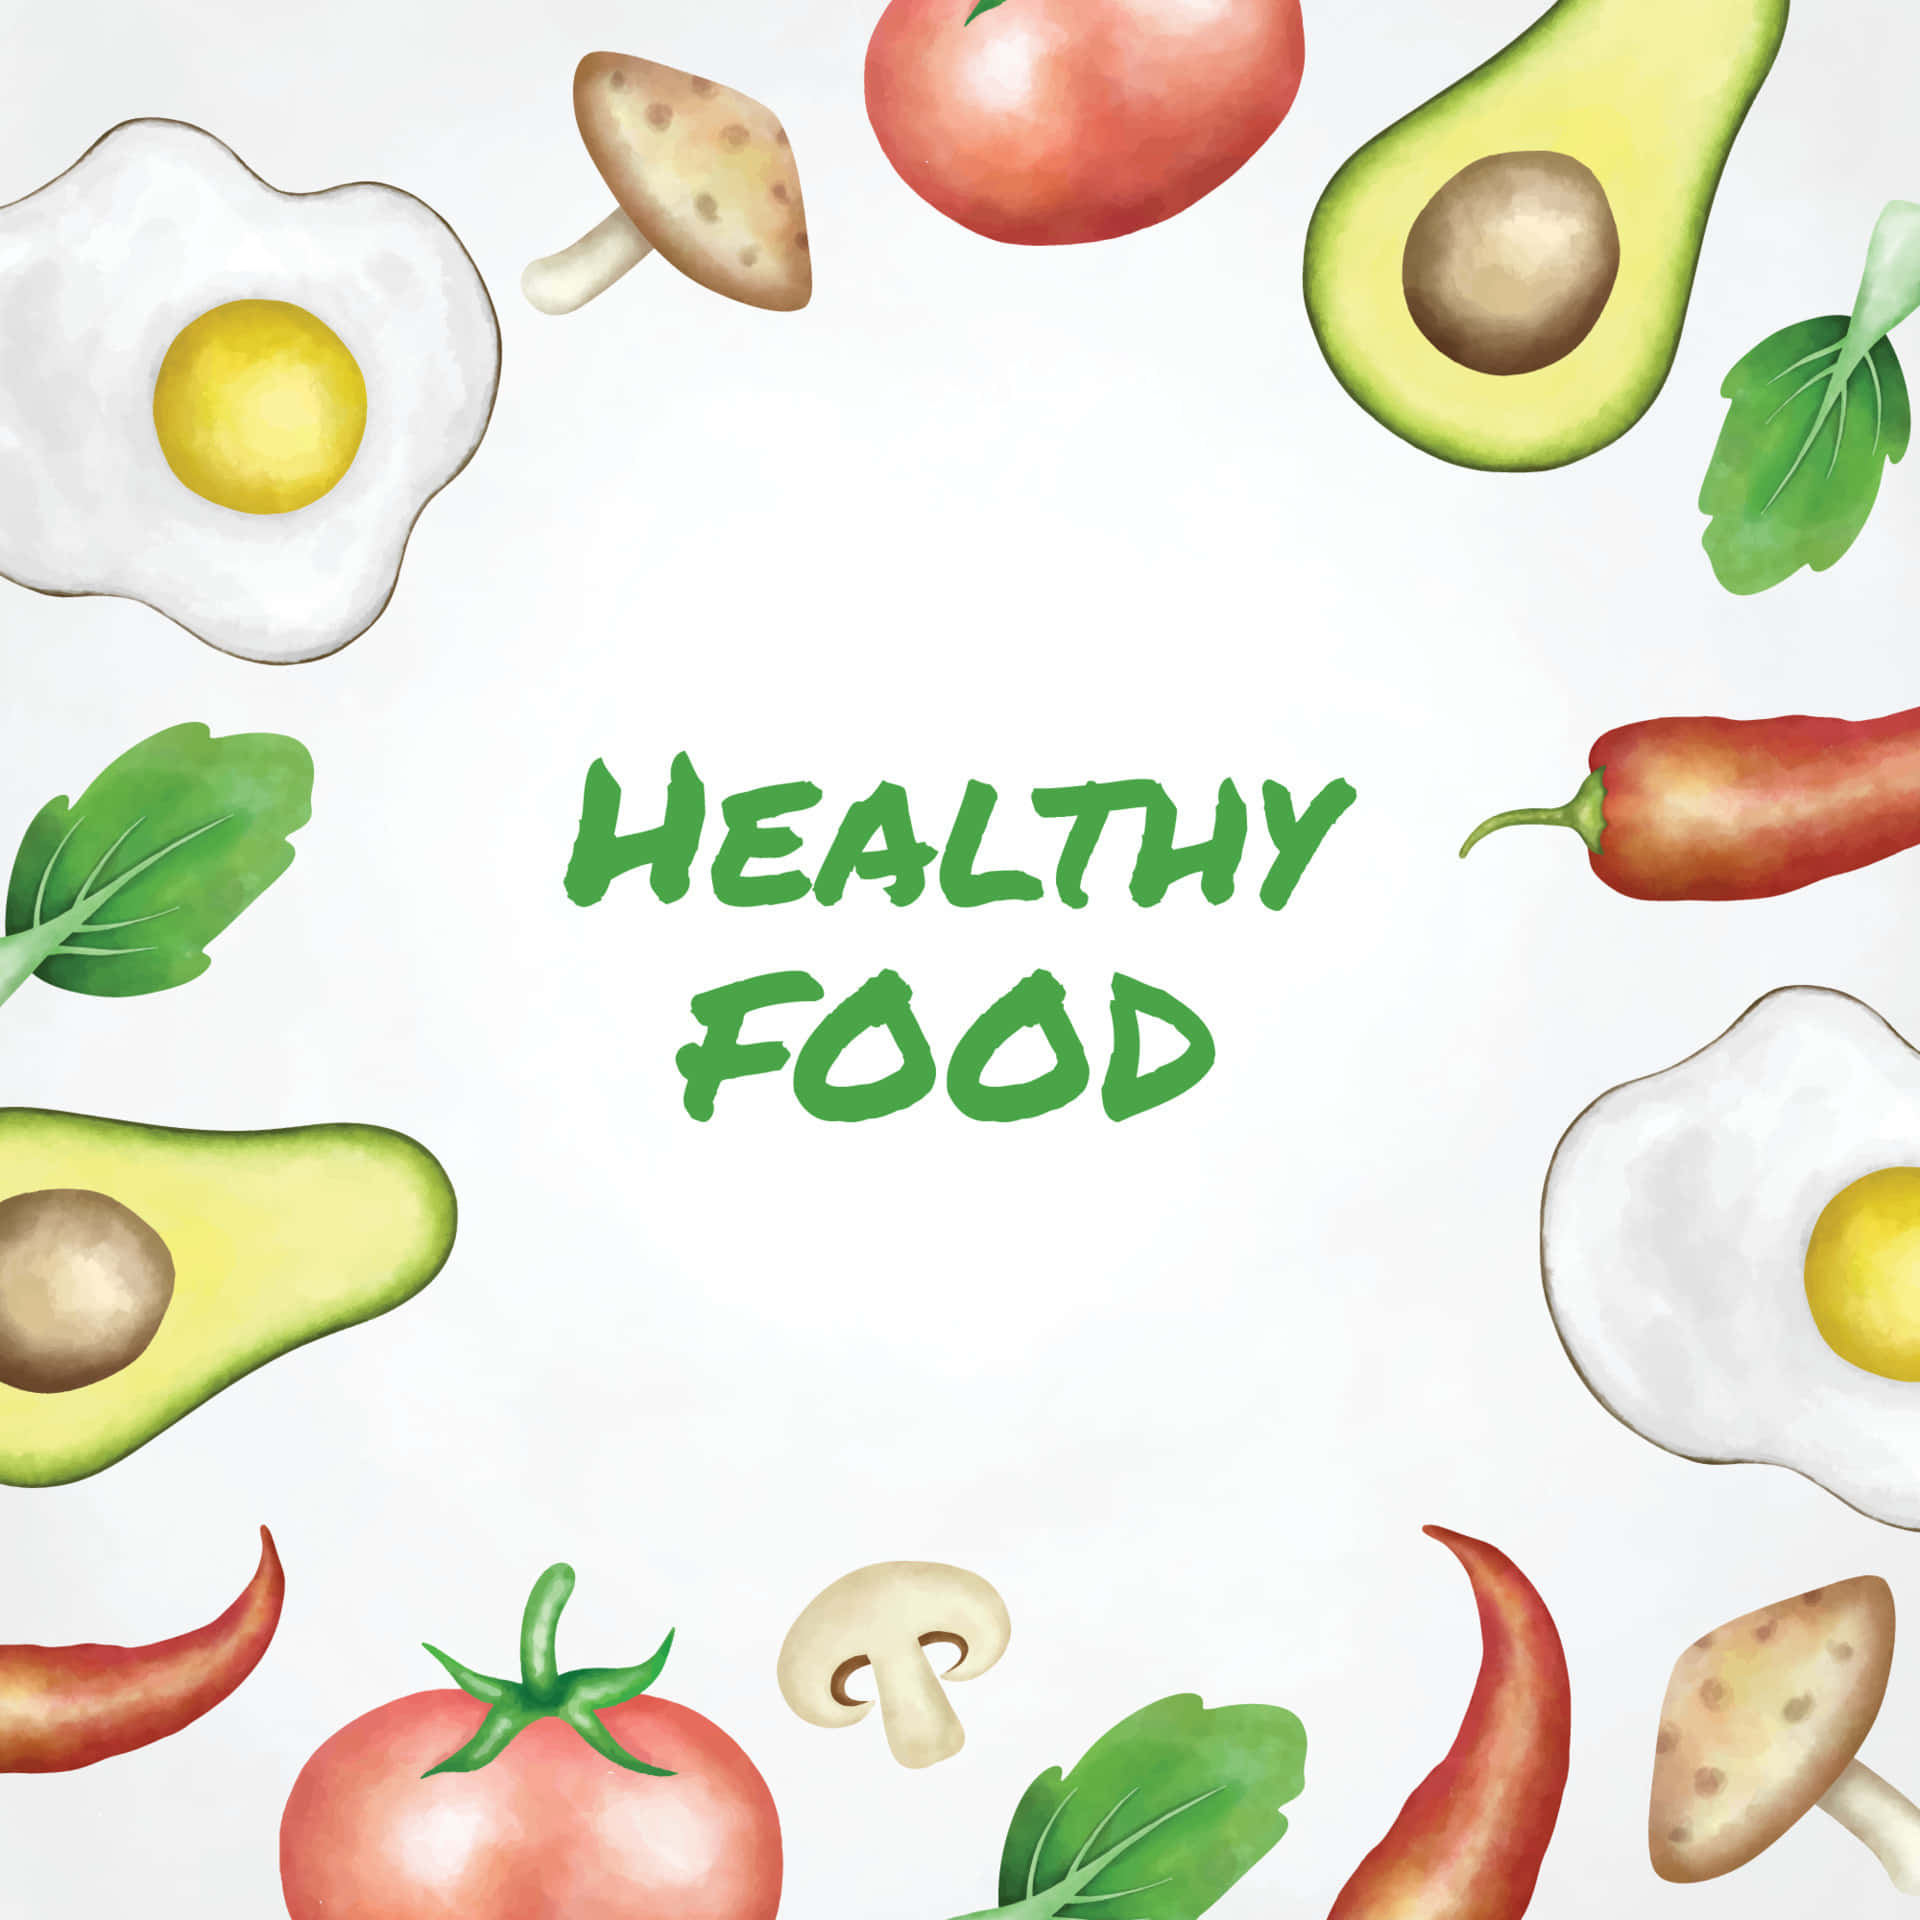 Gesundelebensmittel-illustration Mit Avocado, Tomaten, Eiern Und Pilzen.